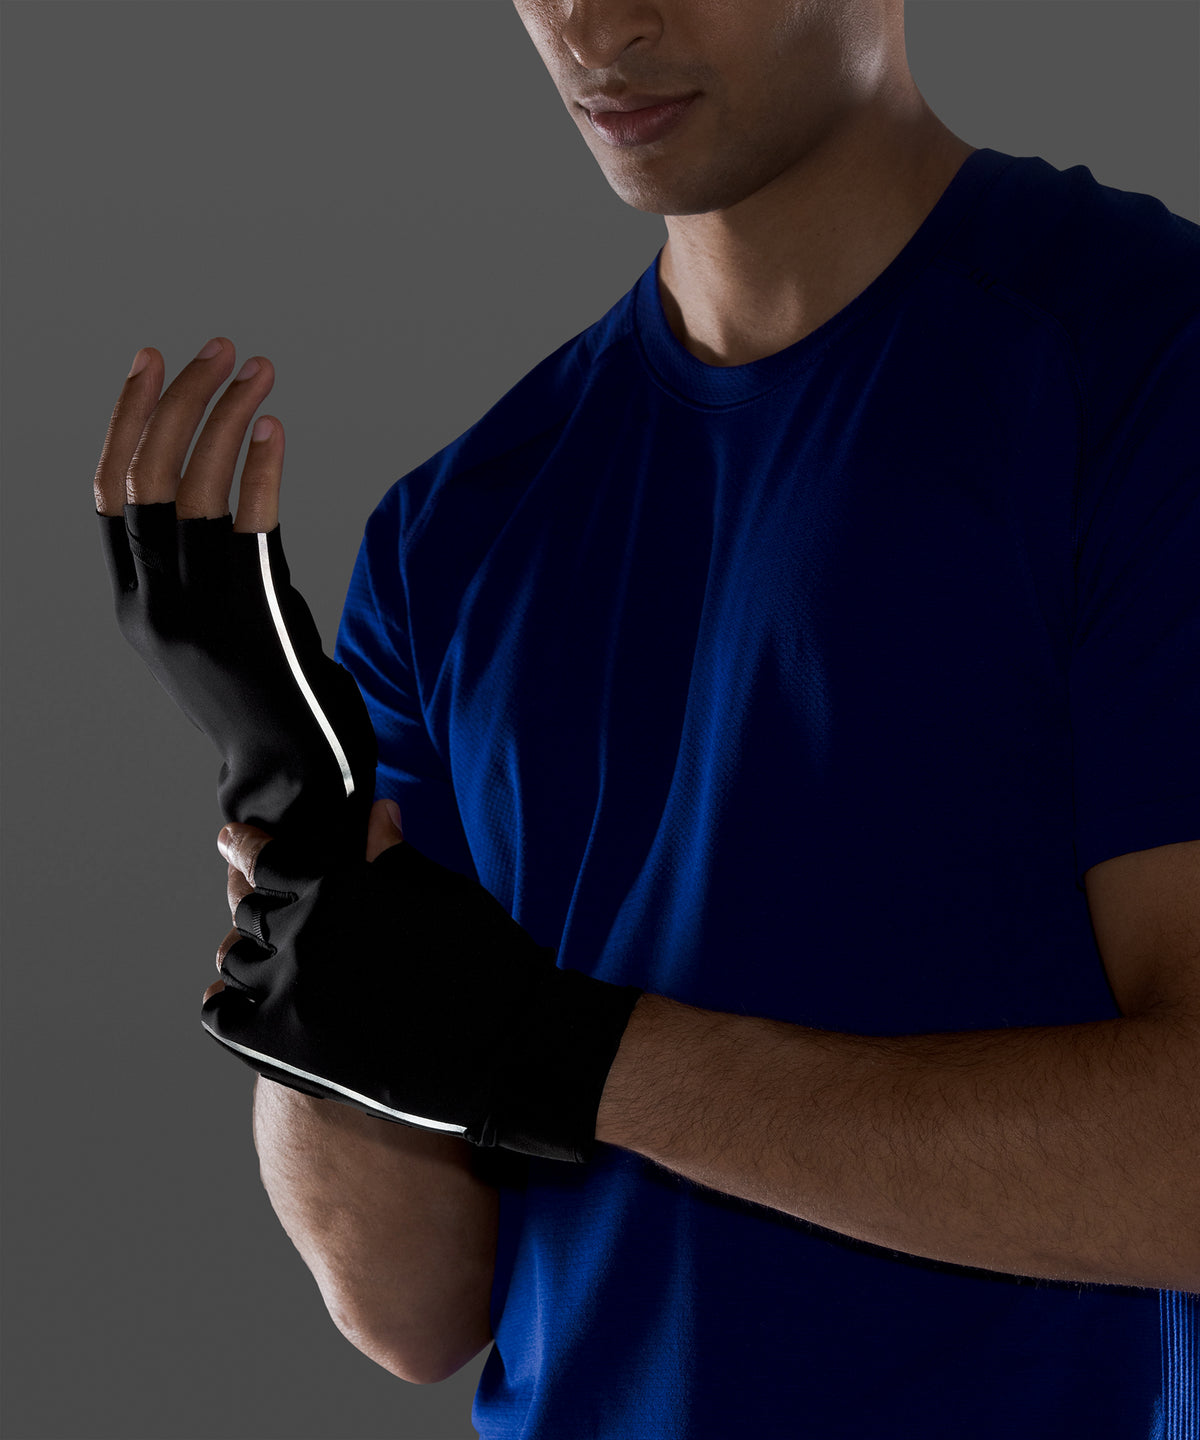 Lululemon Men's License To Train Training Gloves